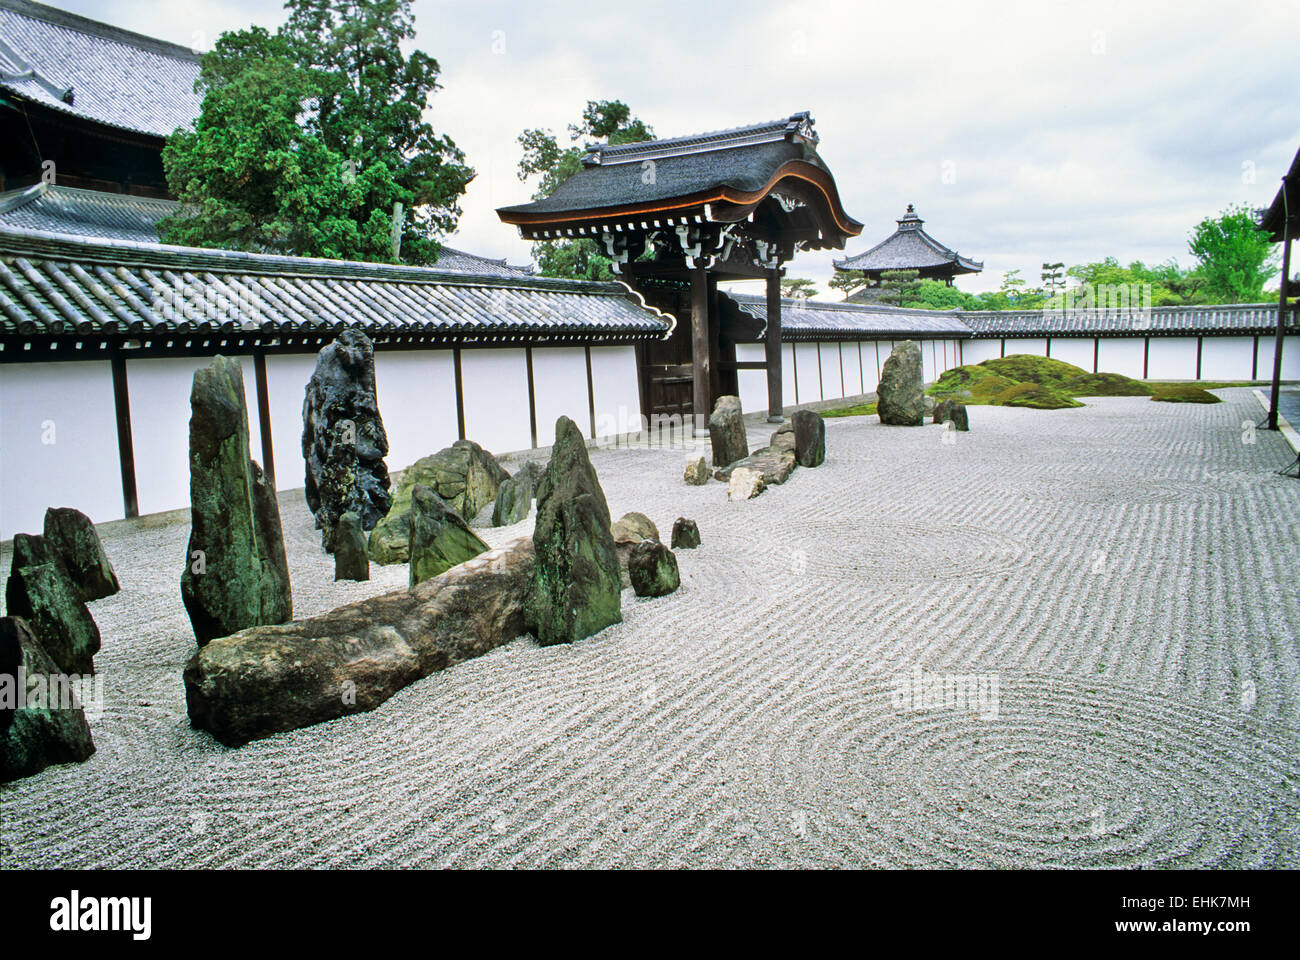 La ciudad de Kyoto es una reserva única de los antiguos jardines Zen y templos, que son más de novecientos años. Foto de stock